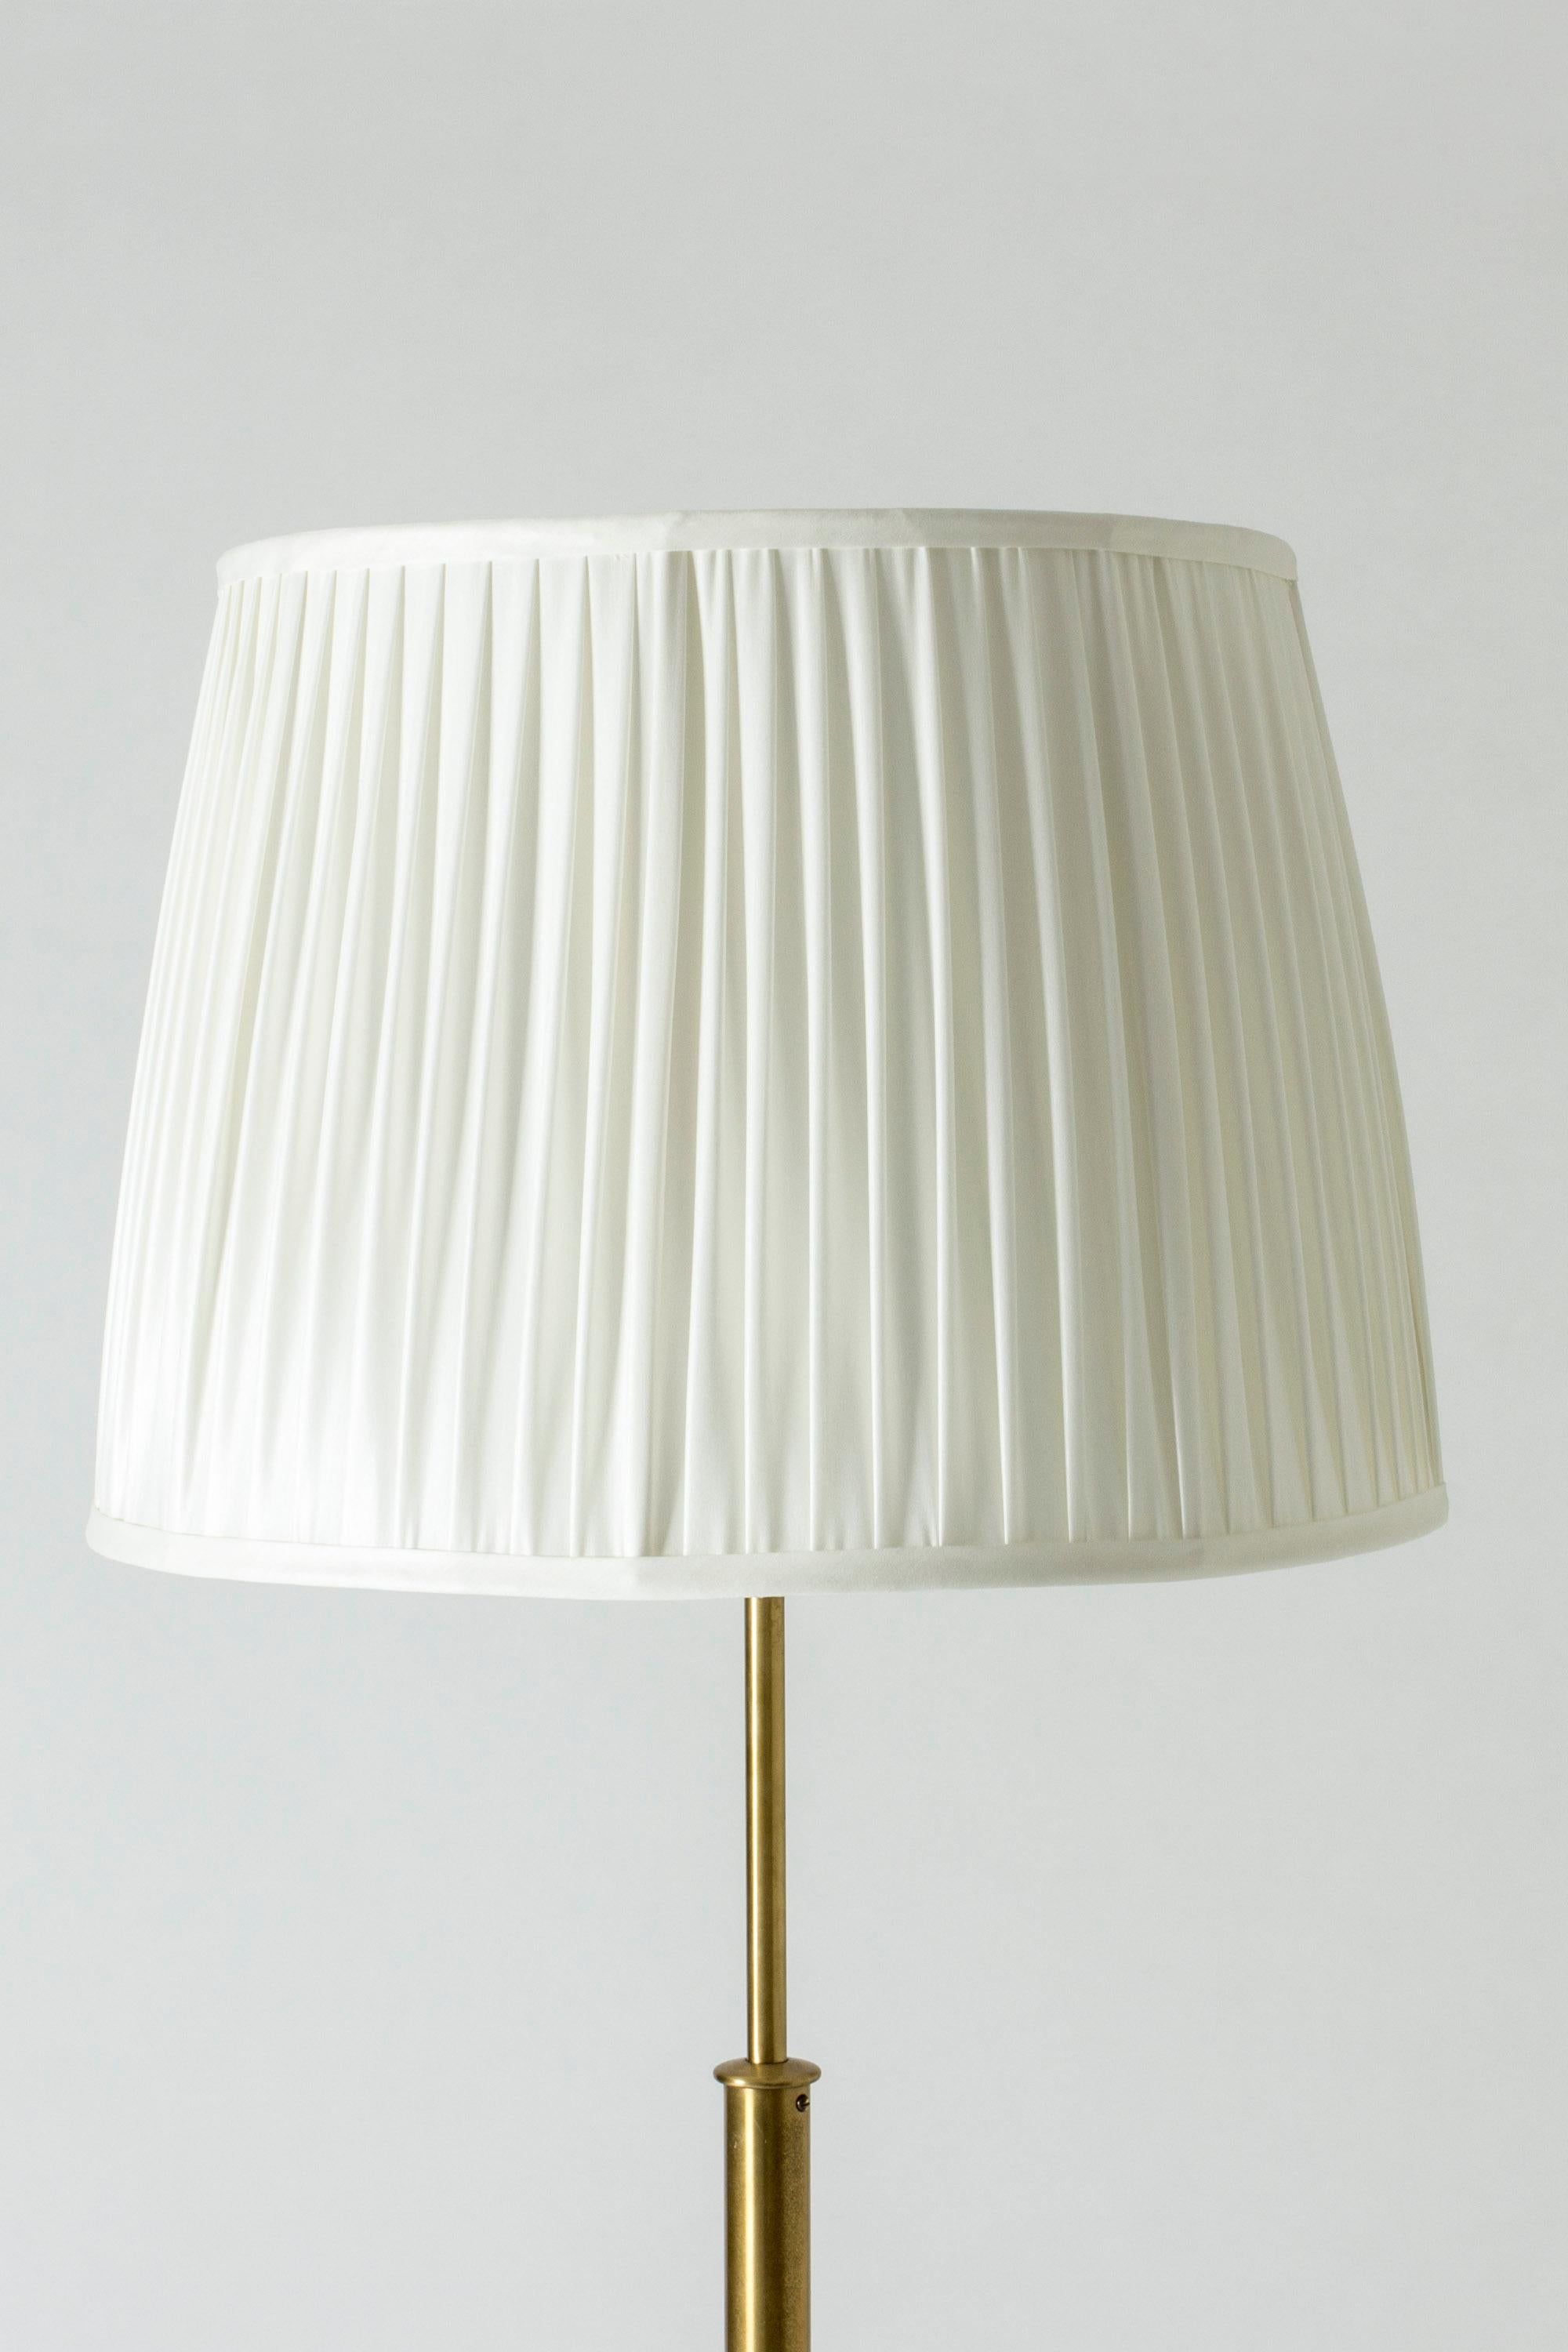 Mid-20th Century Brass Floor Lamp Model #2148 by Josef Frank for Svenskt Tenn, Sweden, 1950s For Sale